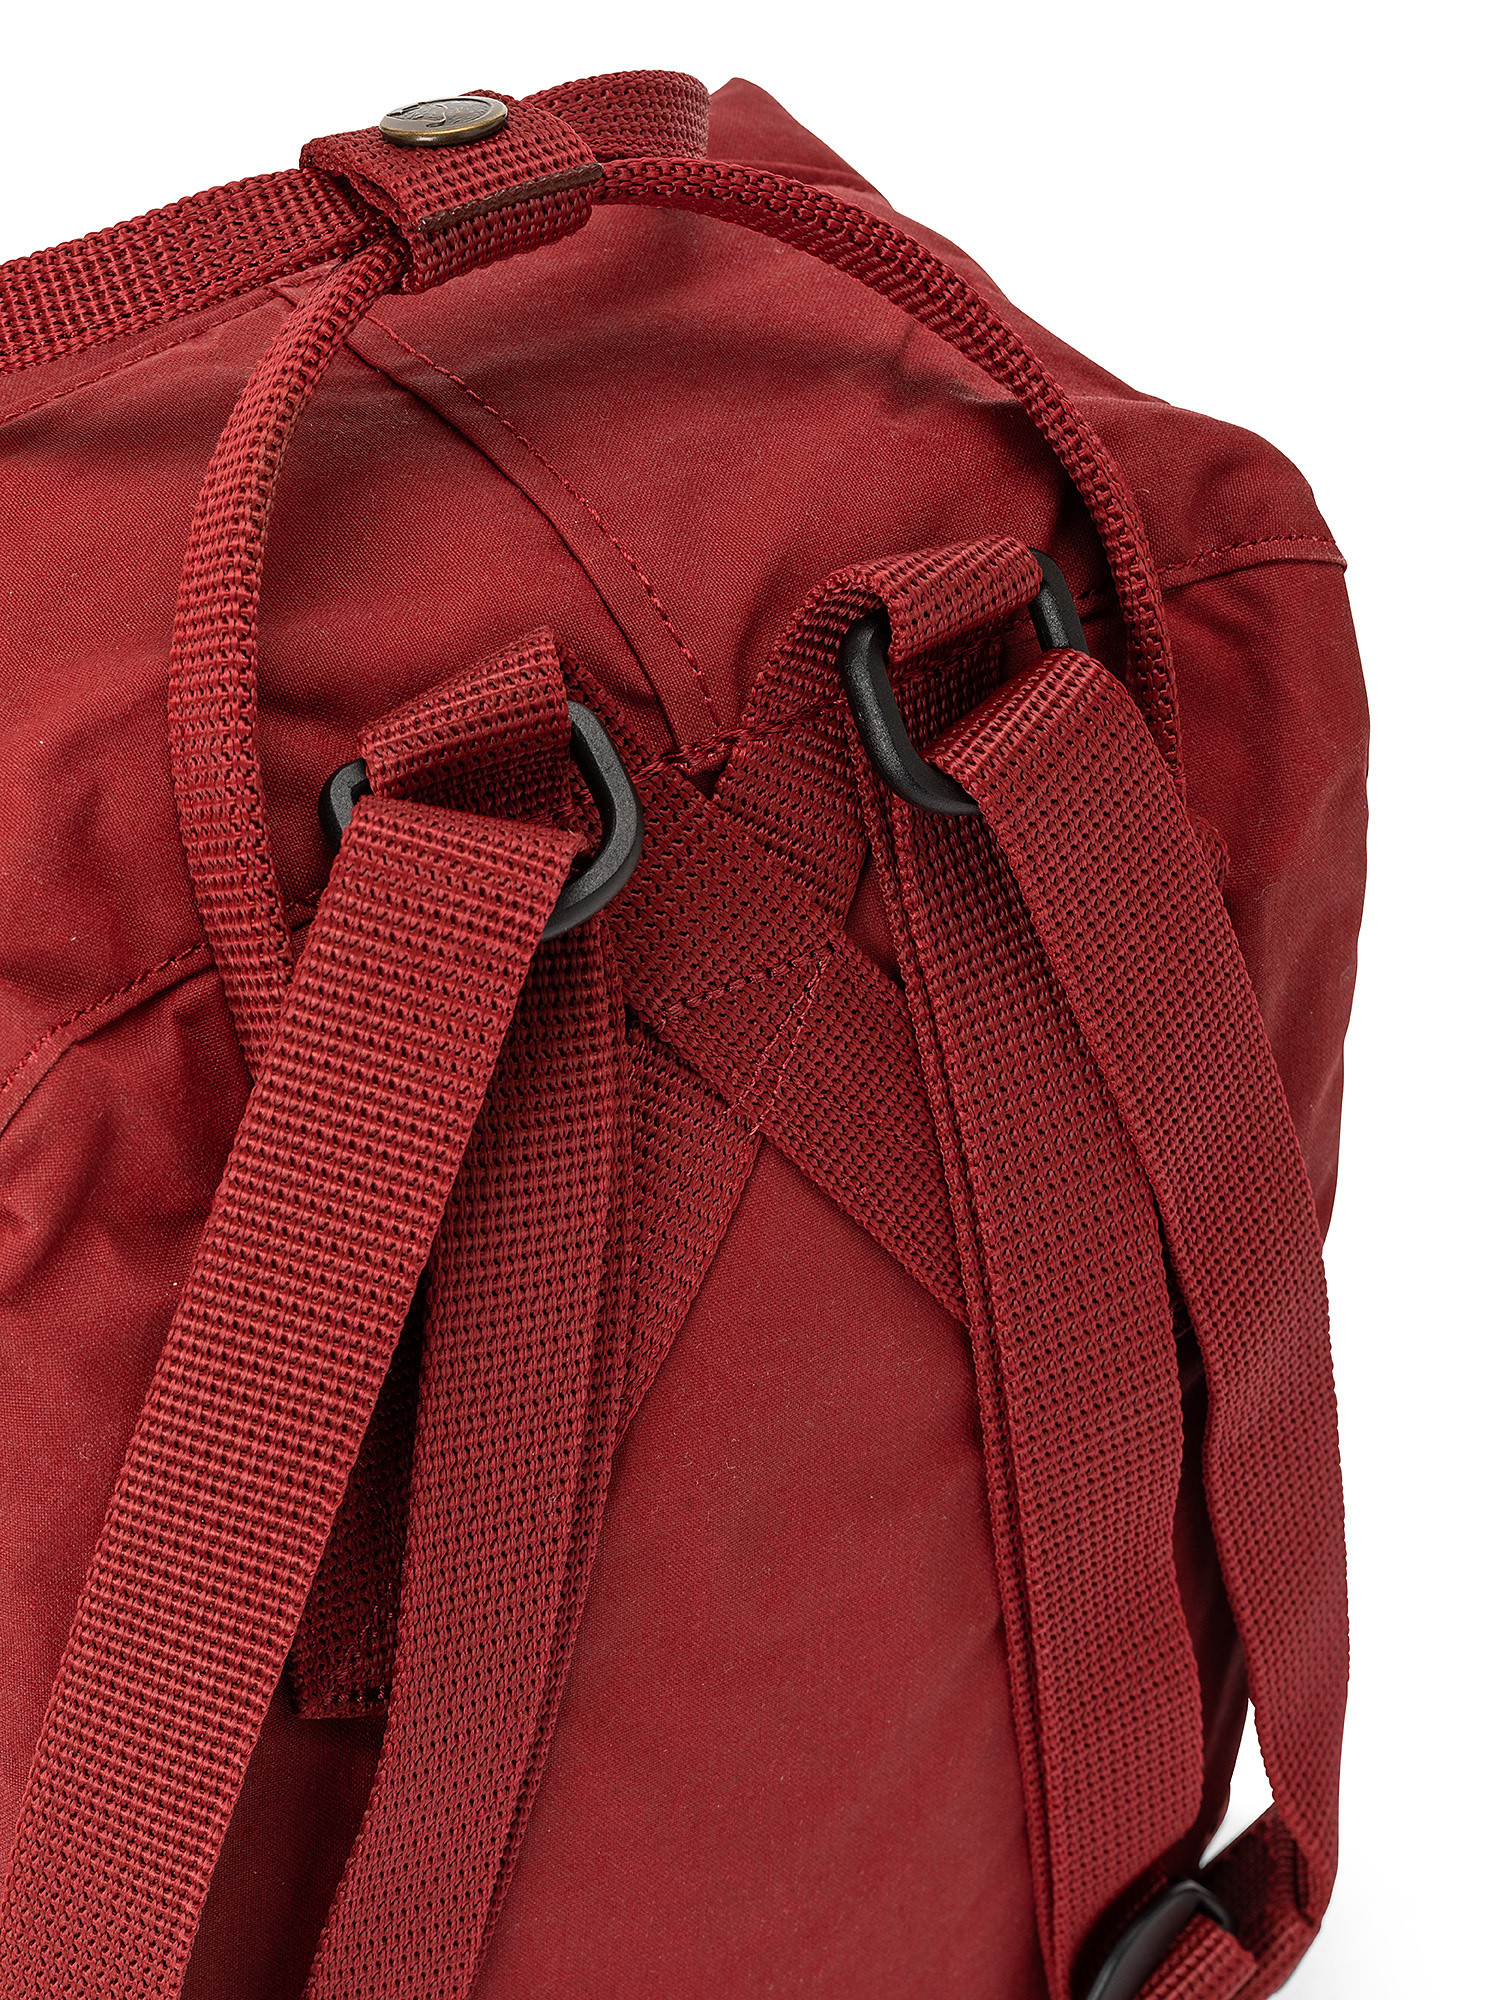 Kanken mini backpack, Red Bordeaux, large image number 2